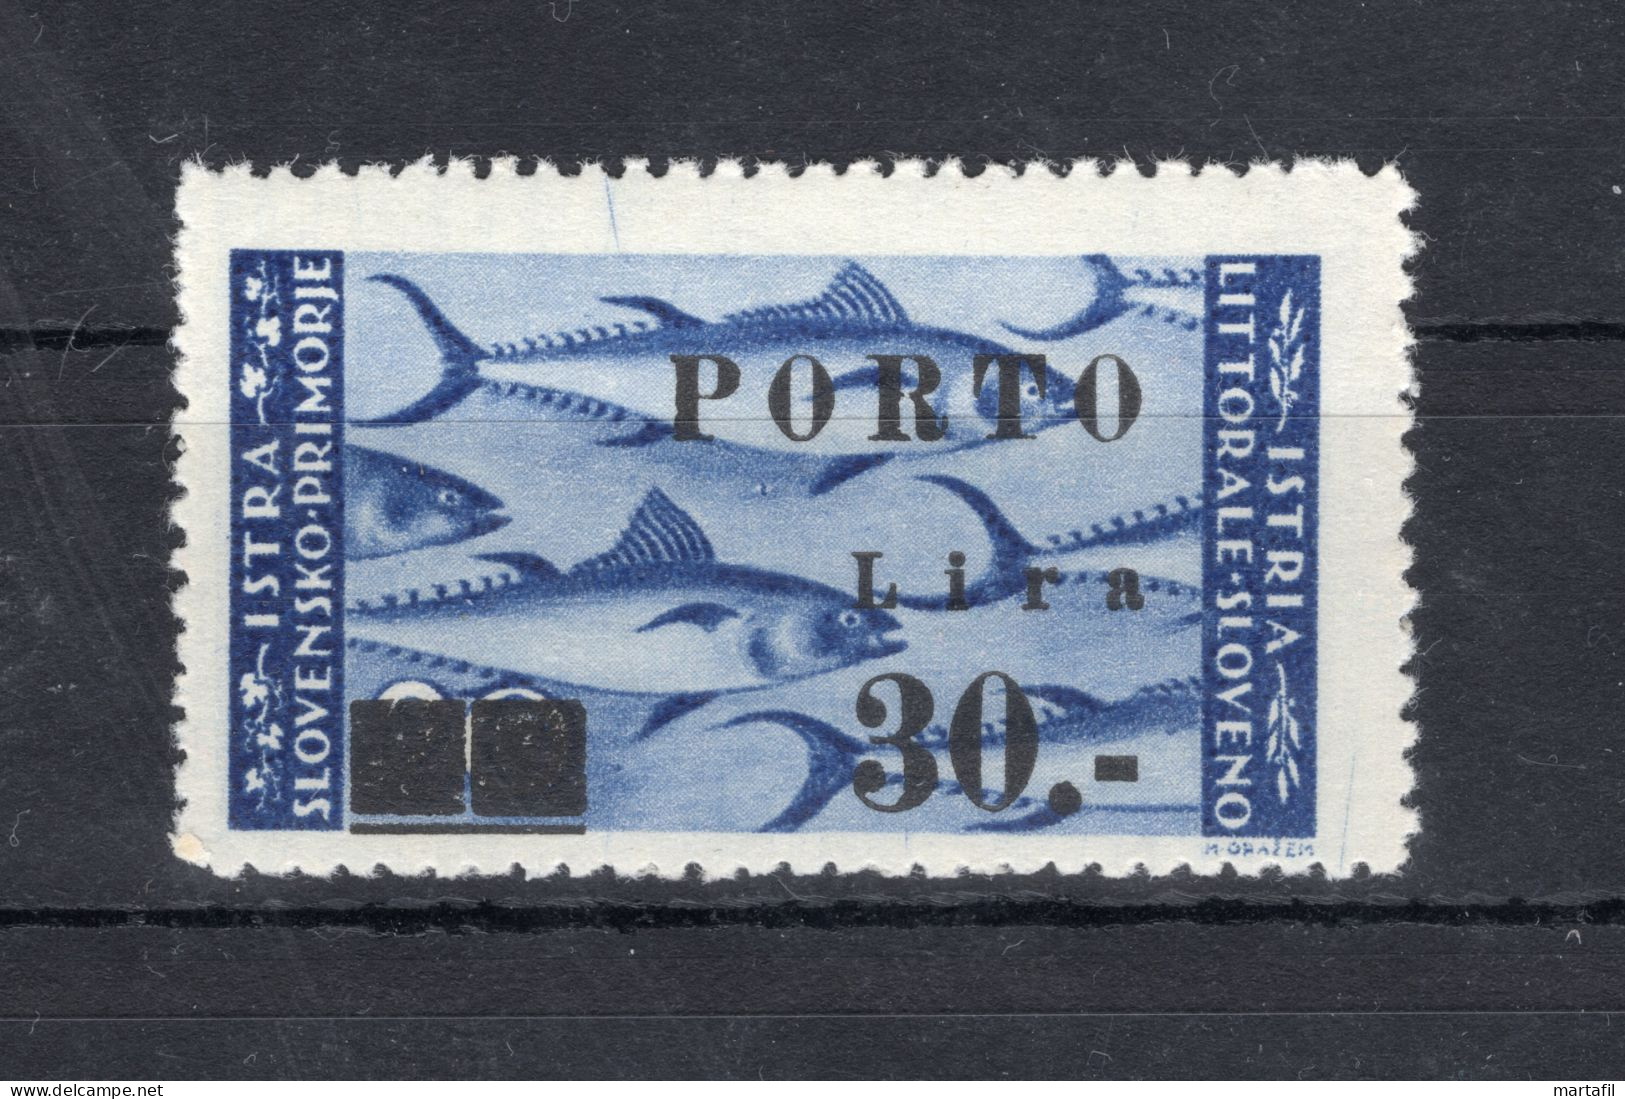 1946 Istria E Litorale Sloveno Occ. Jugoslava Segnatasse S19 MNH ** - Occup. Iugoslava: Litorale Sloveno